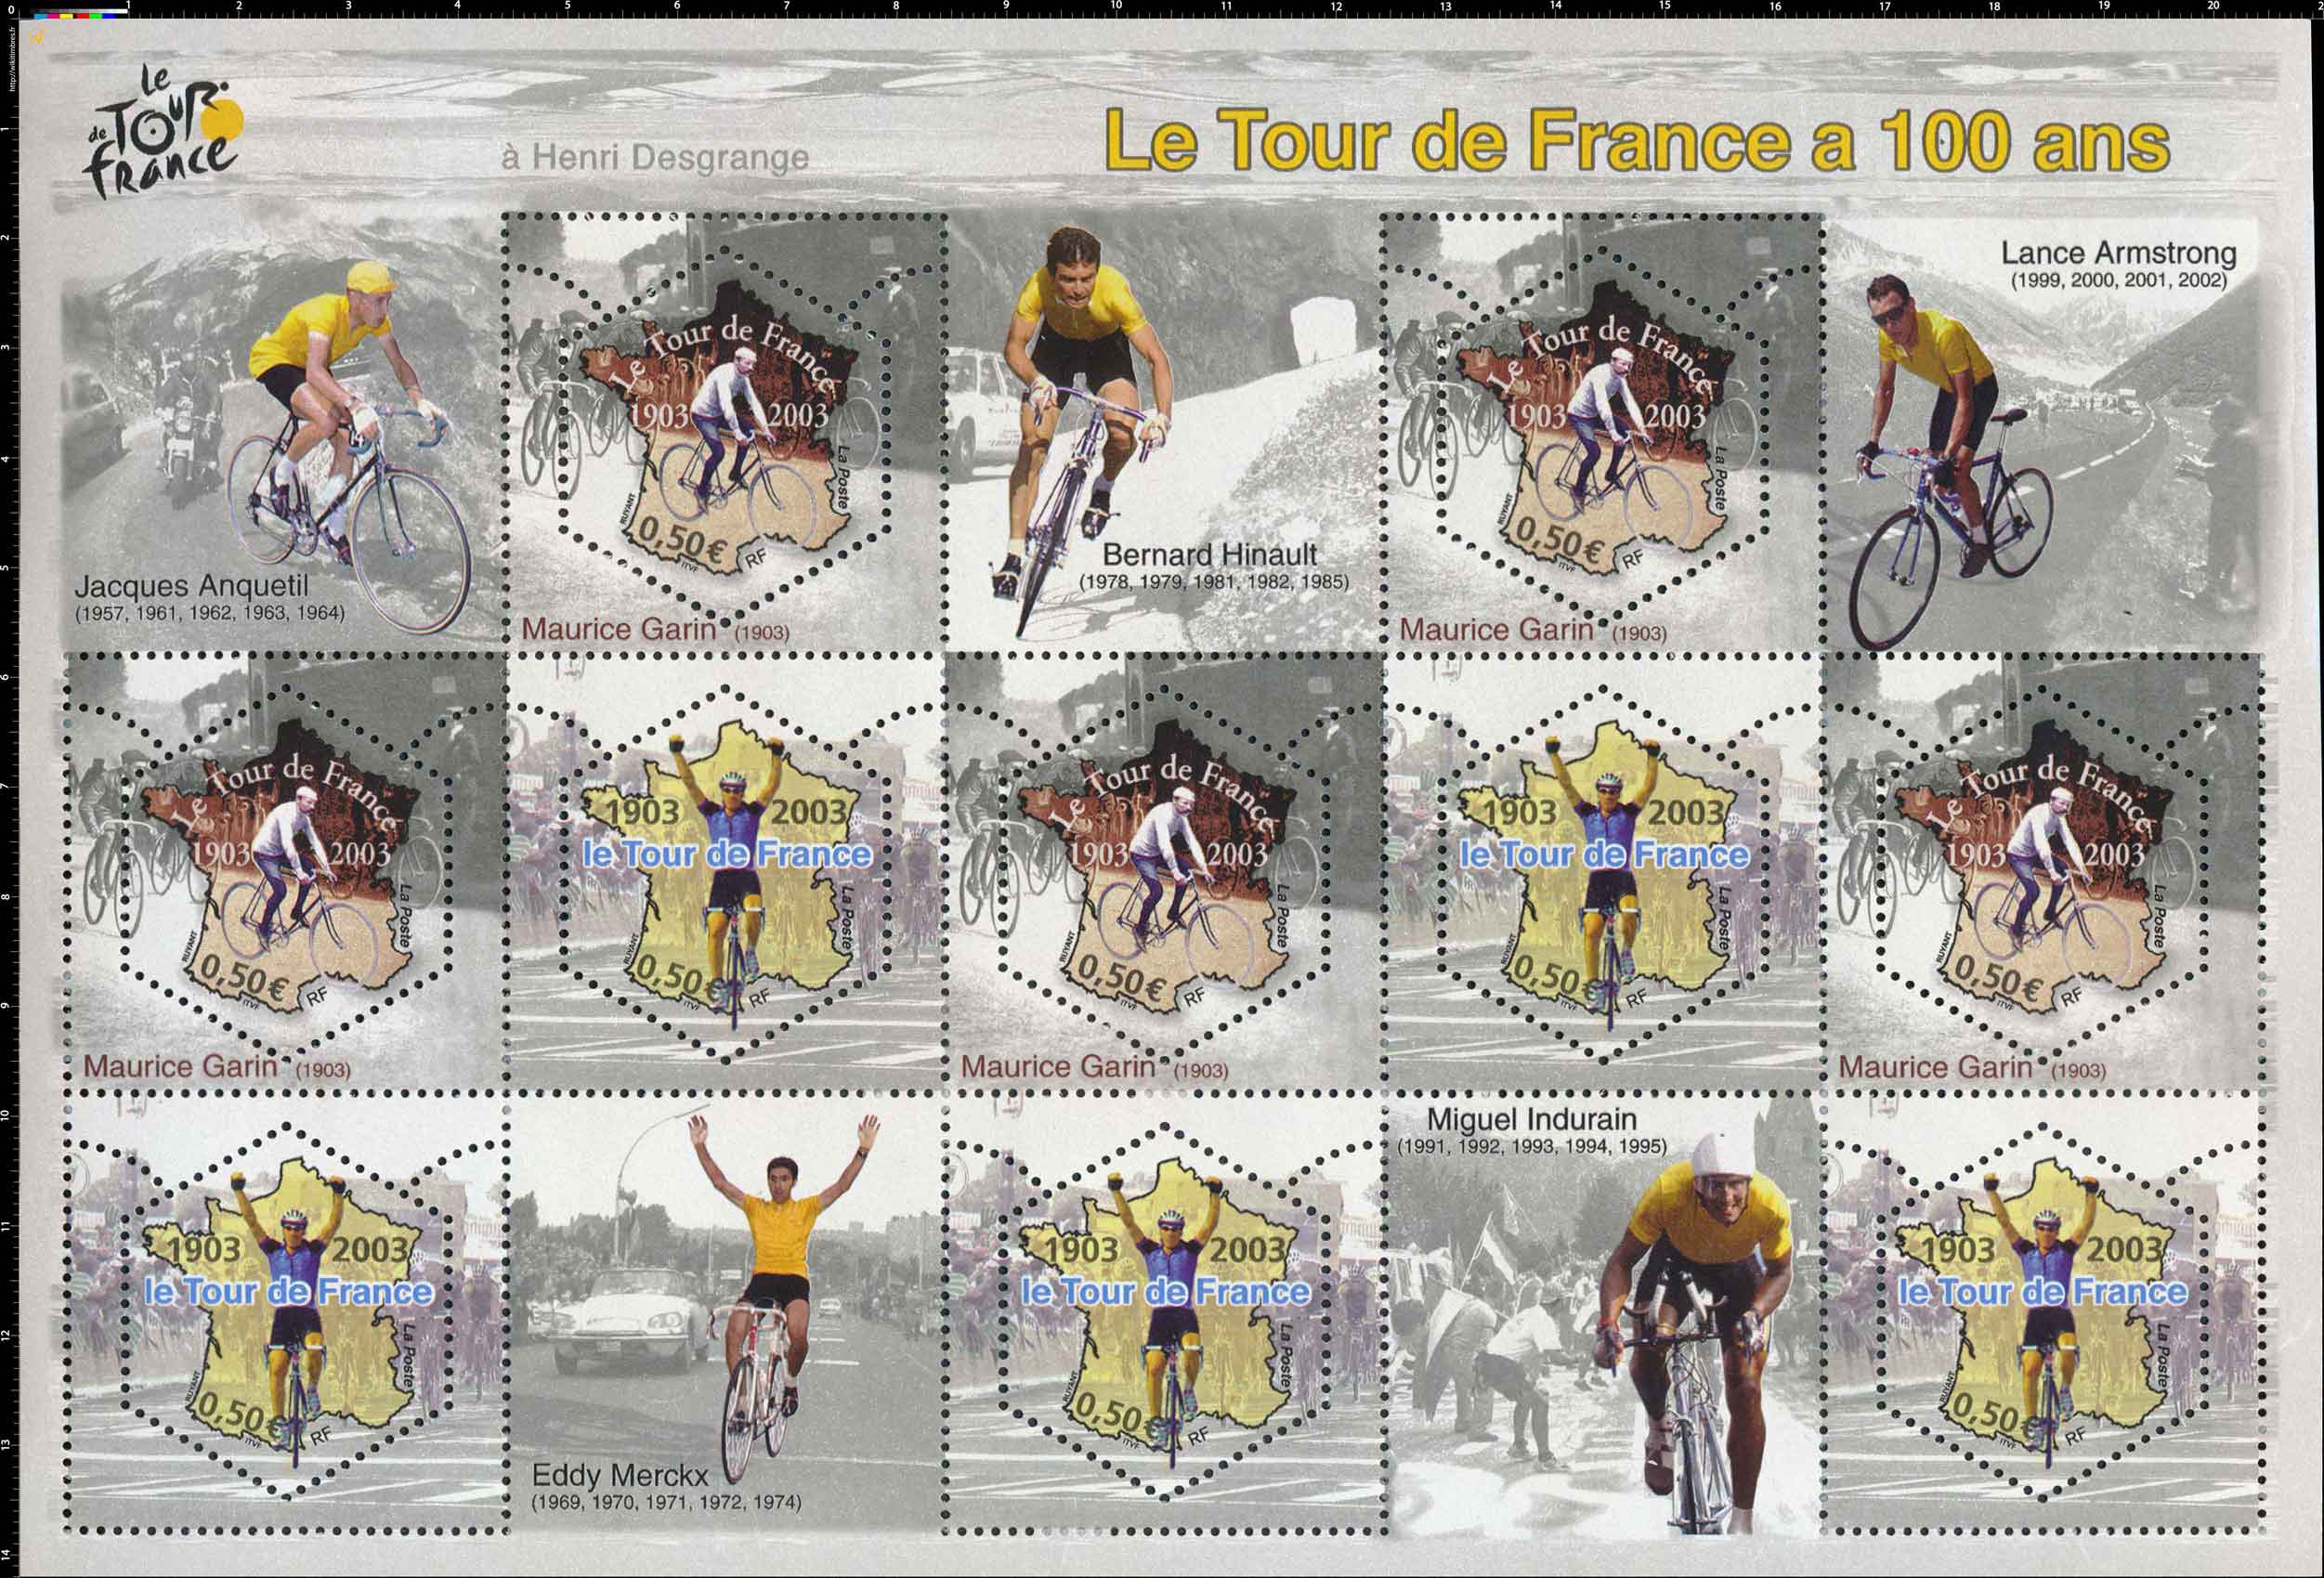 Le Tour de France a 100 ans